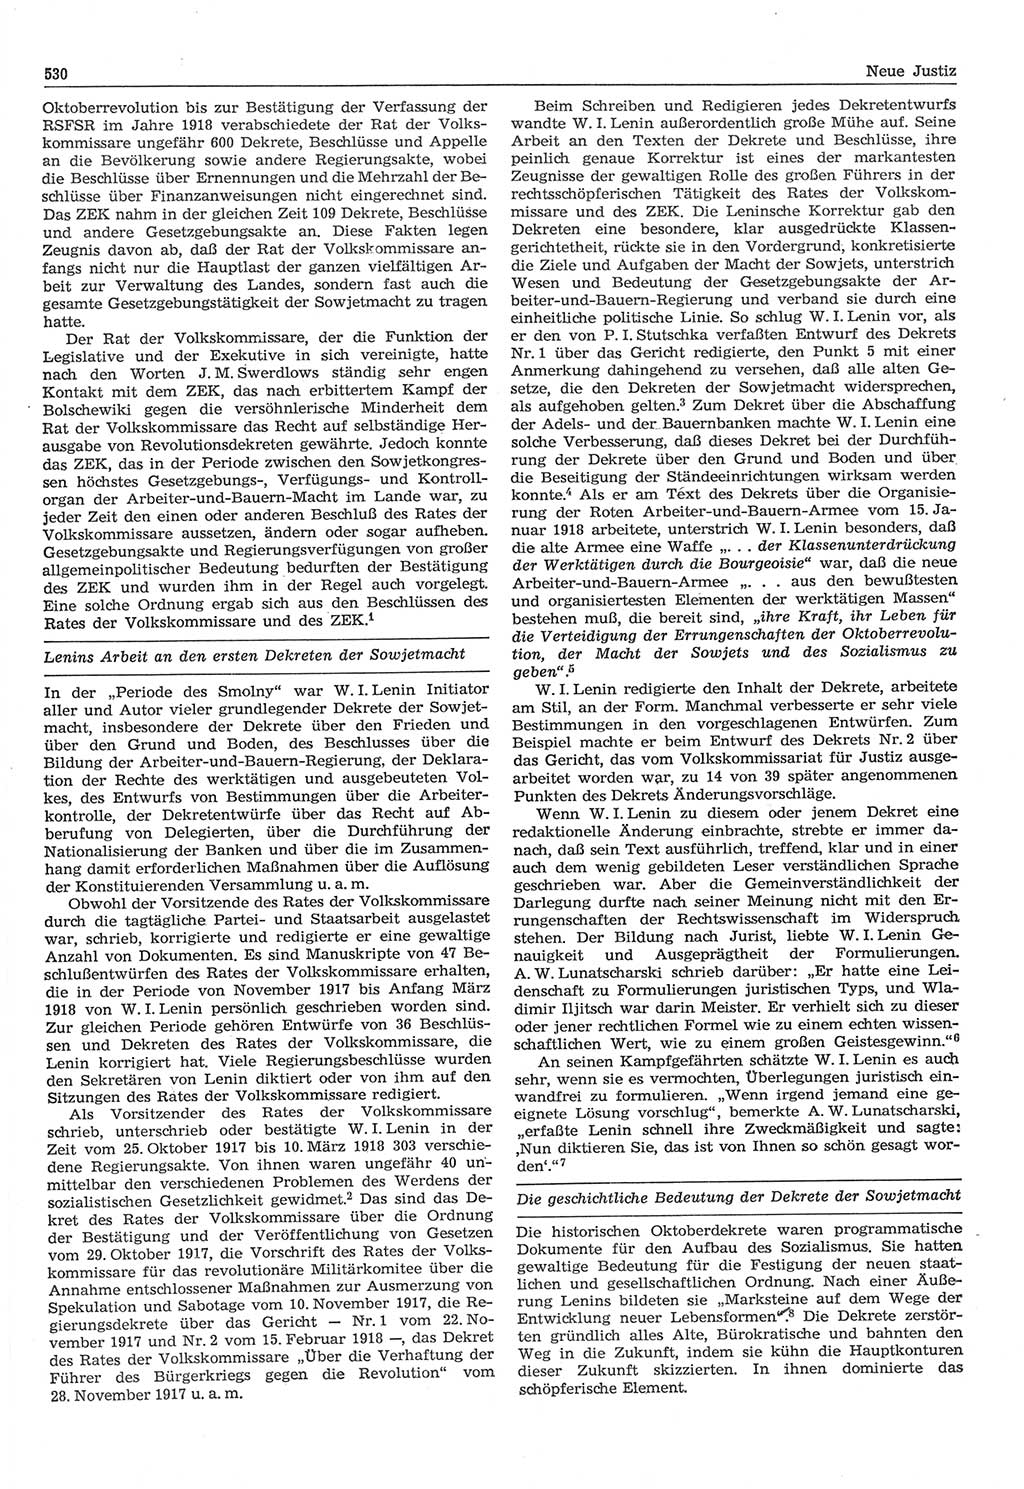 Neue Justiz (NJ), Zeitschrift für Recht und Rechtswissenschaft-Zeitschrift, sozialistisches Recht und Gesetzlichkeit, 31. Jahrgang 1977, Seite 530 (NJ DDR 1977, S. 530)